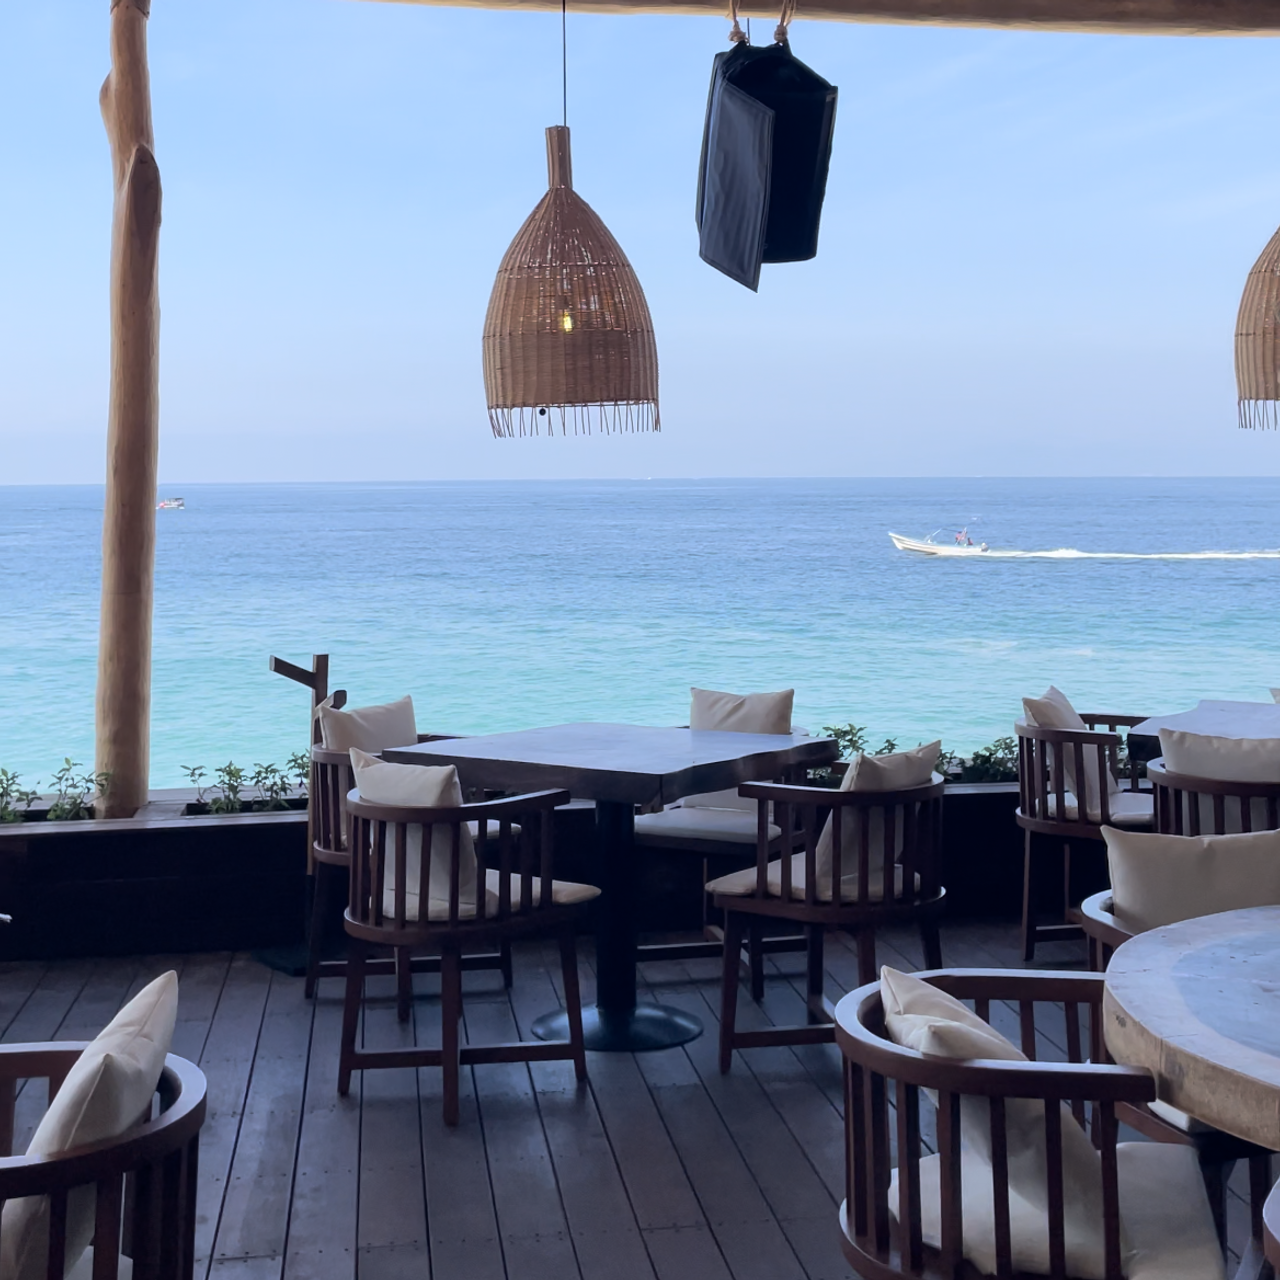 Ánima Beach Club Restaurant - Bajos del Ejido, GRO | OpenTable